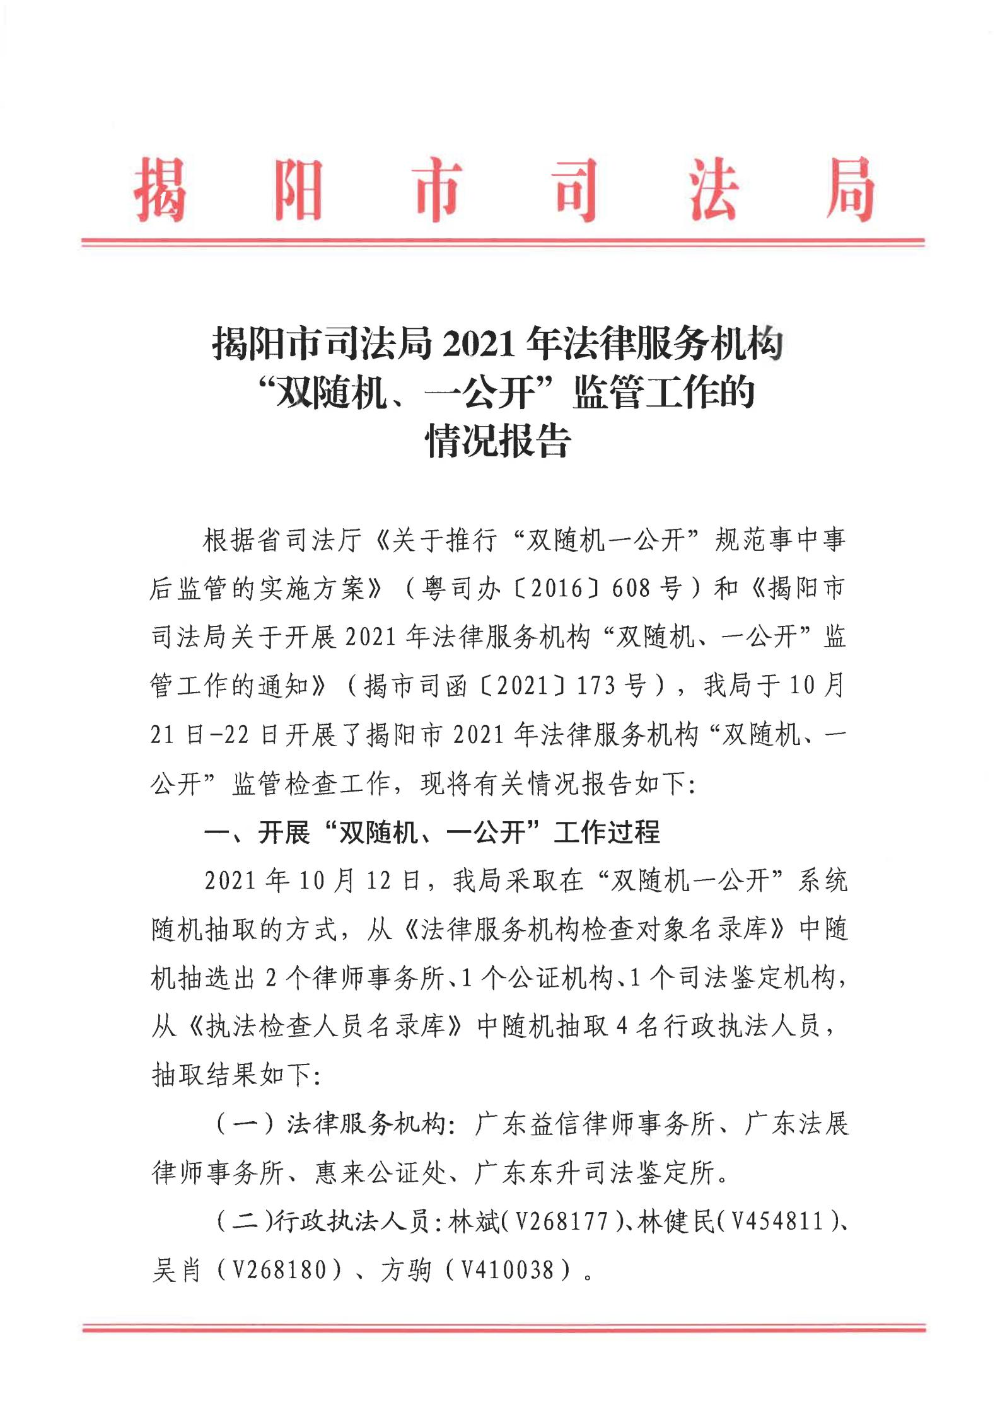 揭阳市司法局2021年法律服务机构“双随机、一公开”监管工作的情况报告_00.jpg